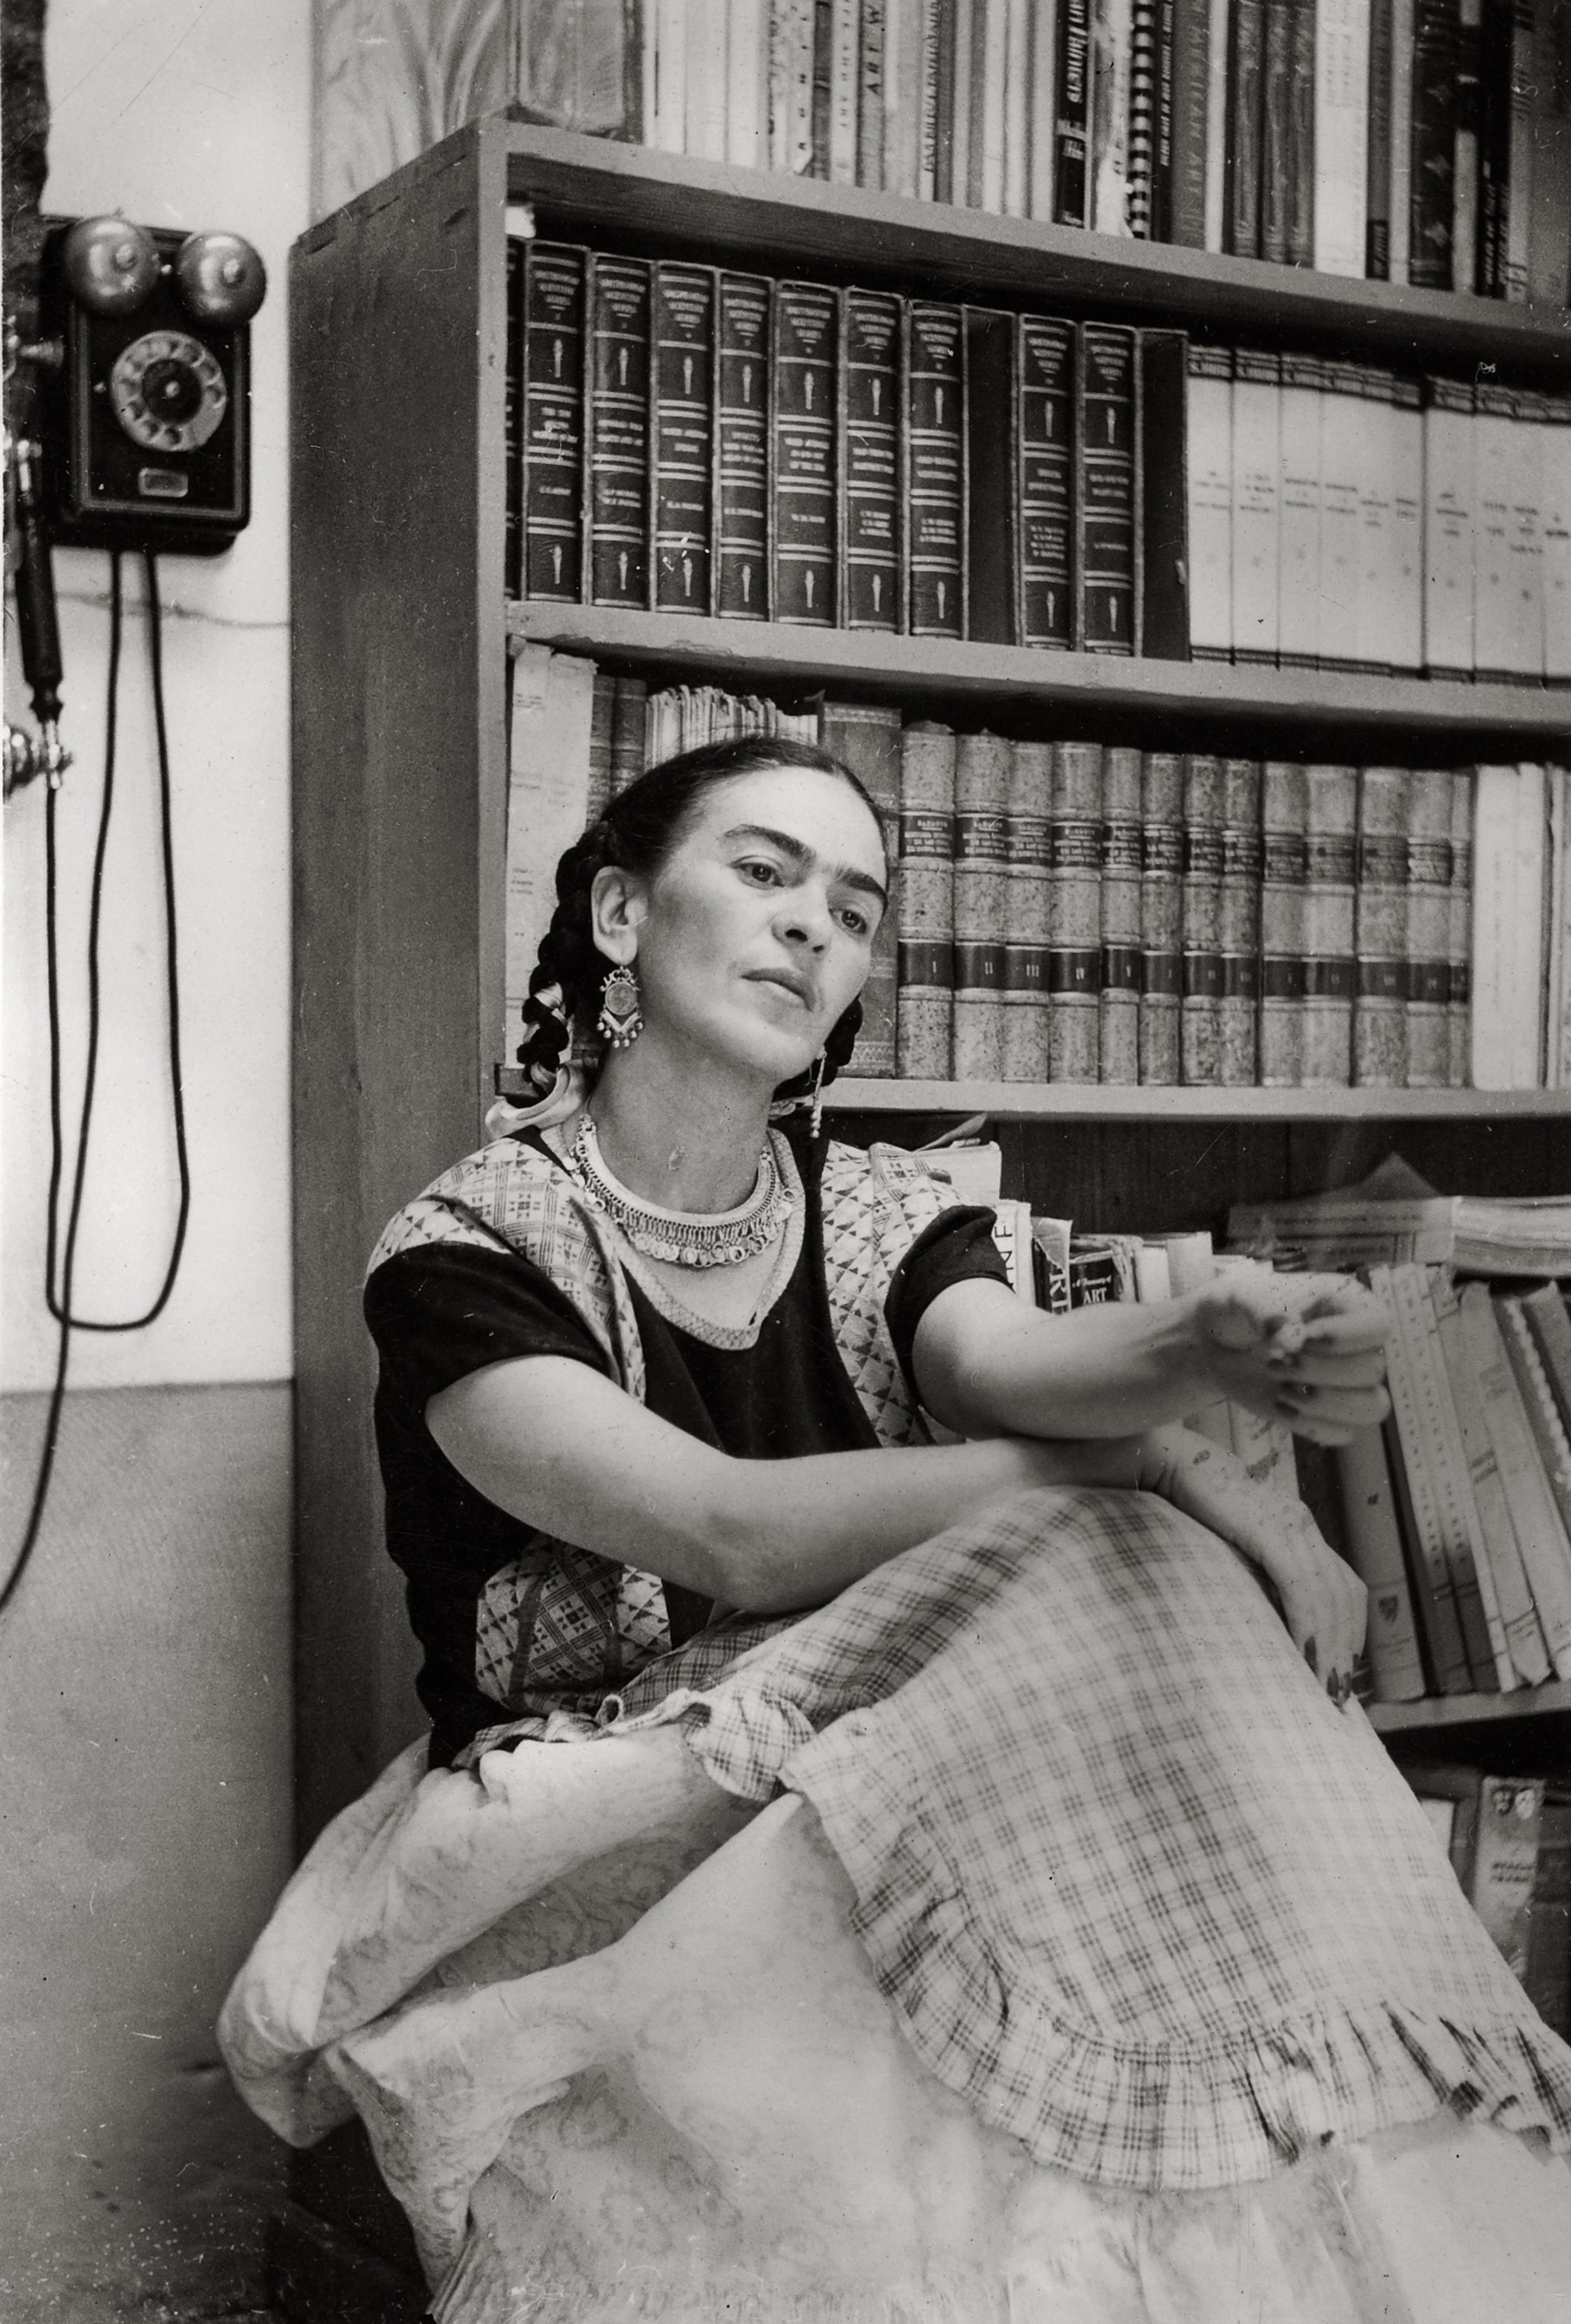 frida kahlo: biografía, frases y curiosidades que quizá no sabías